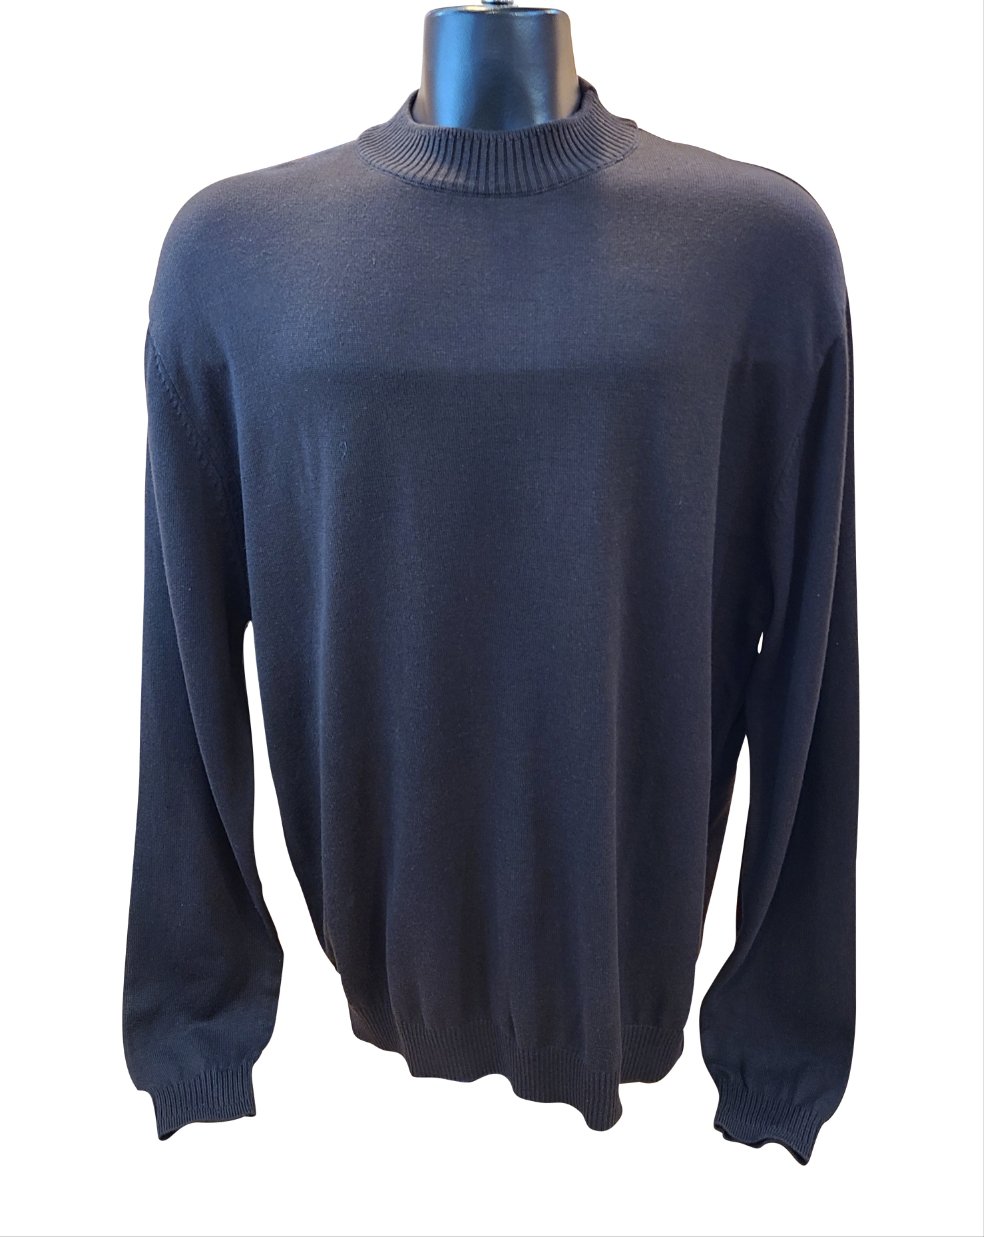 Varessa Terrano Long Sleeves sweater Moc